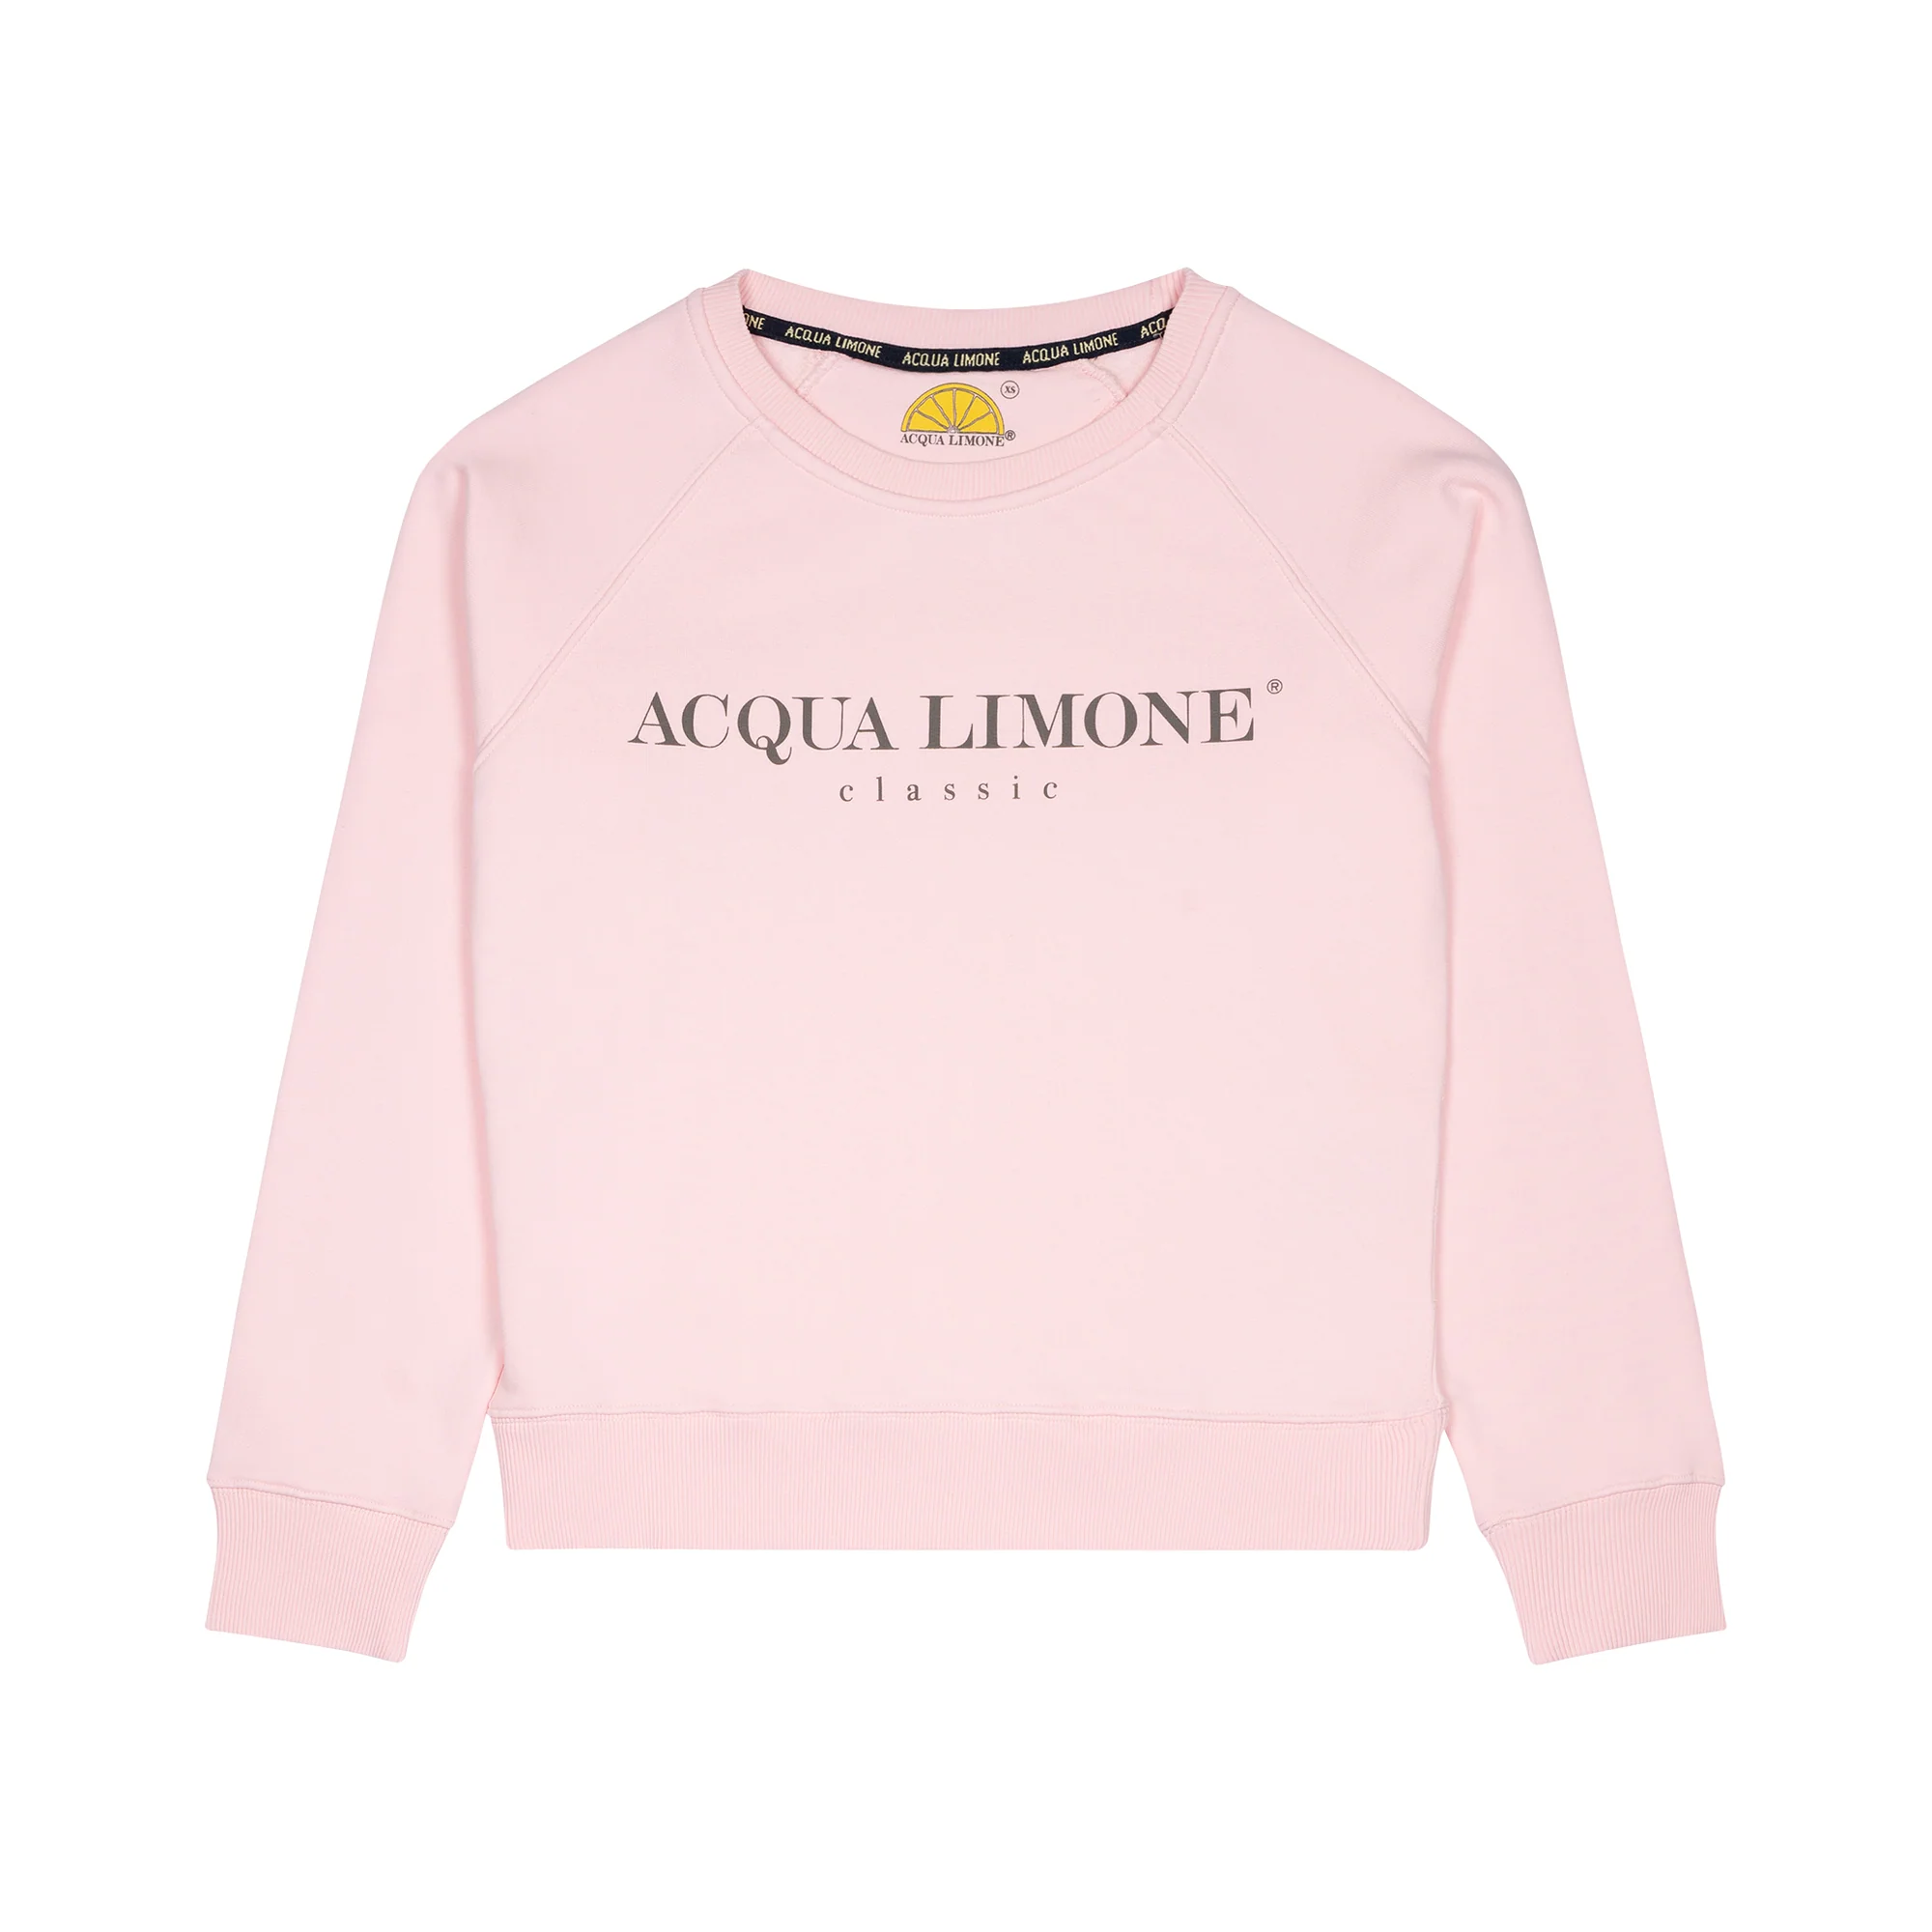 Acqua Limone - College Classic, Pale Pink